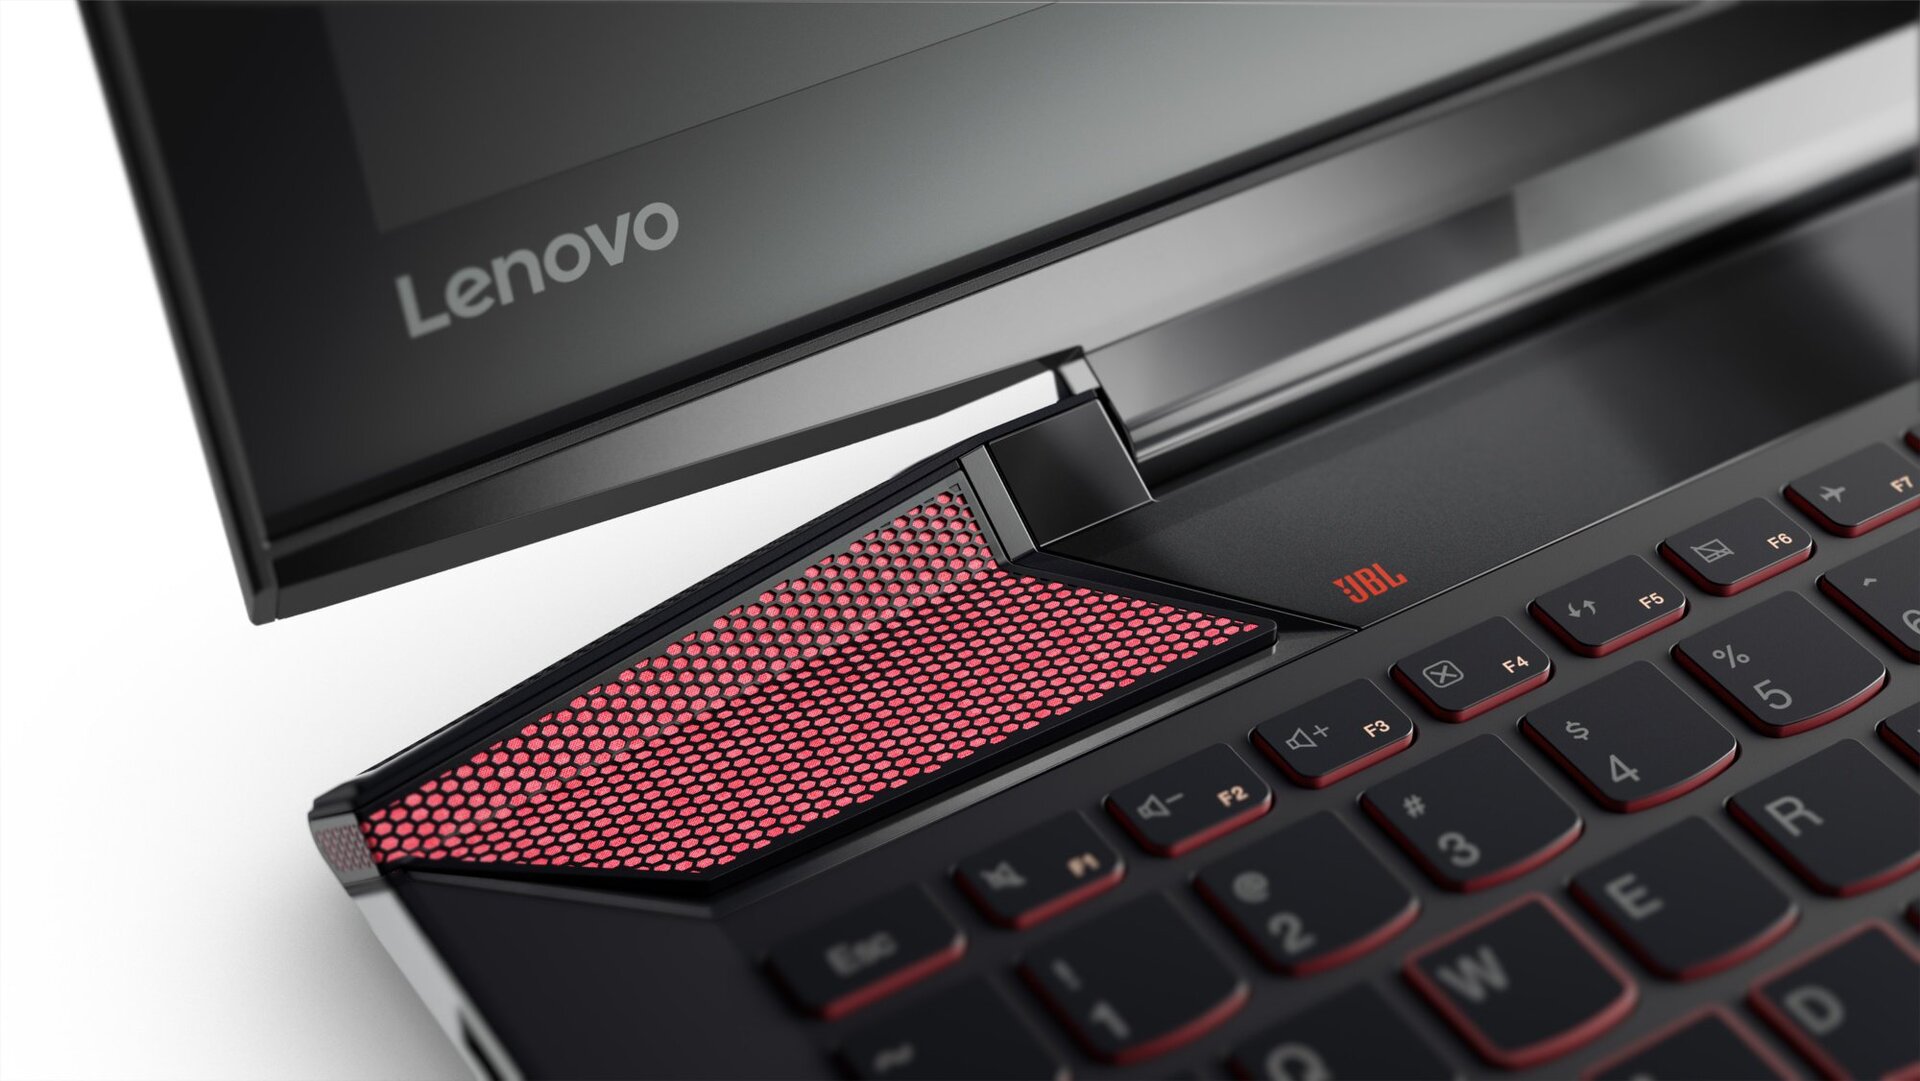 Lenovo IdeaPad Y700